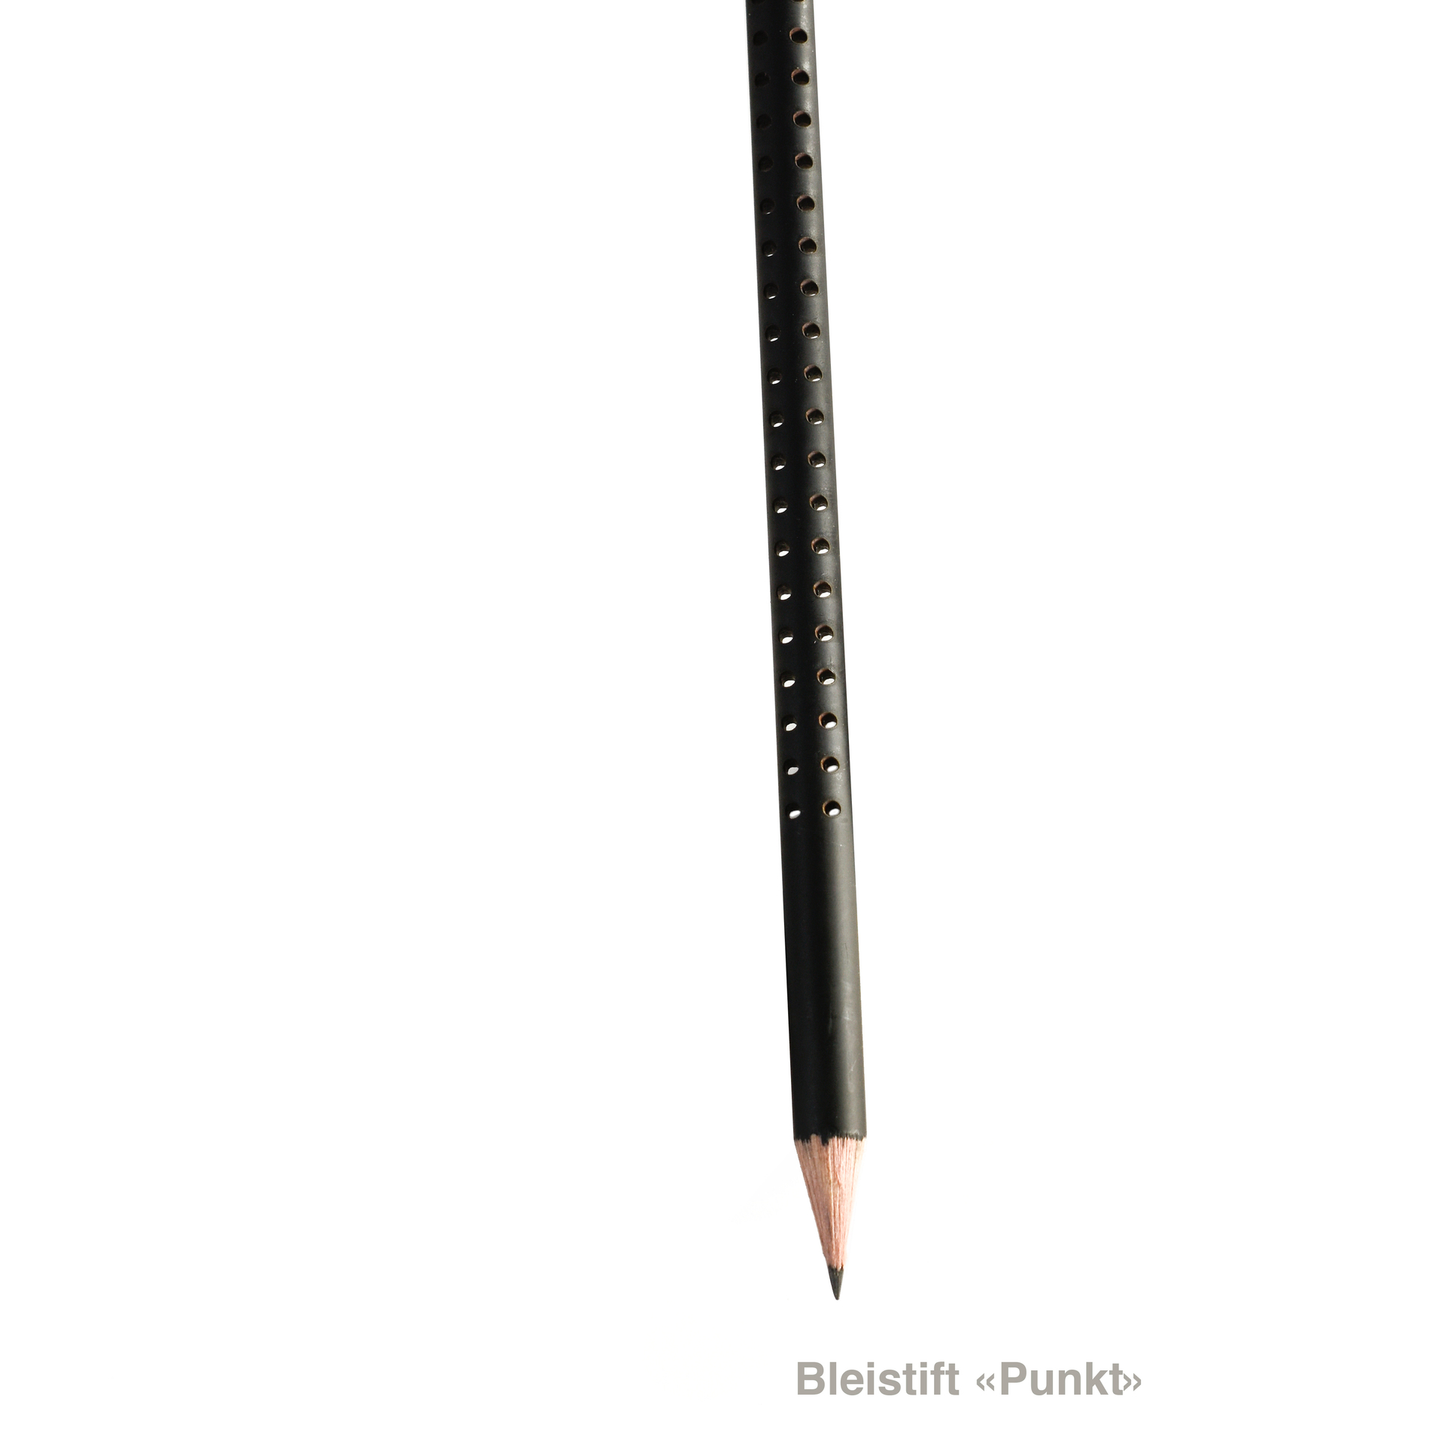 tät-tat - Bleistifte / Pencils